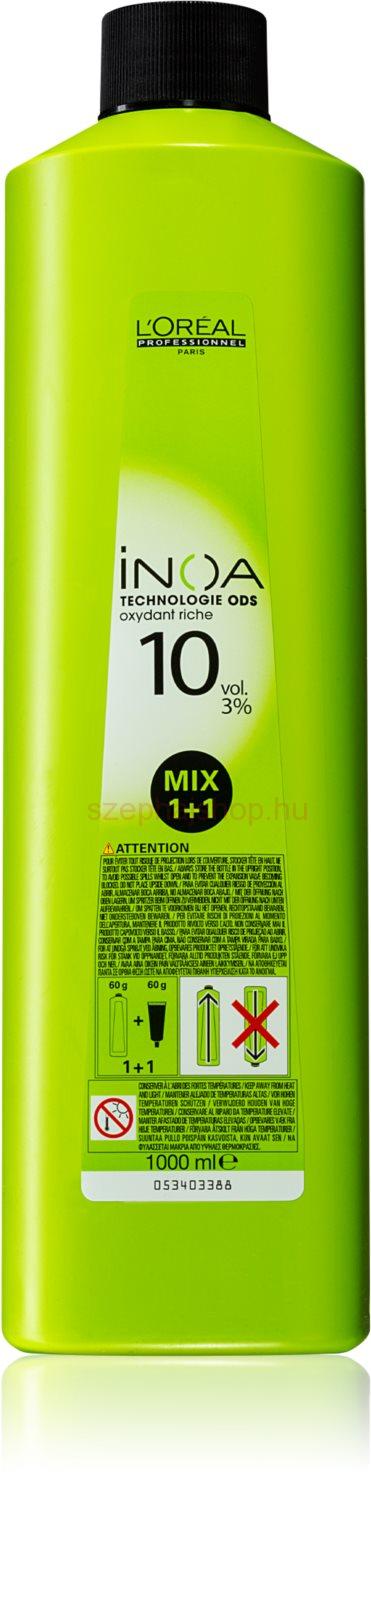 L'Oréal Professionnel Inoa ODS2 színelőhívó emulzió 10 vol. 3% 1000 ml